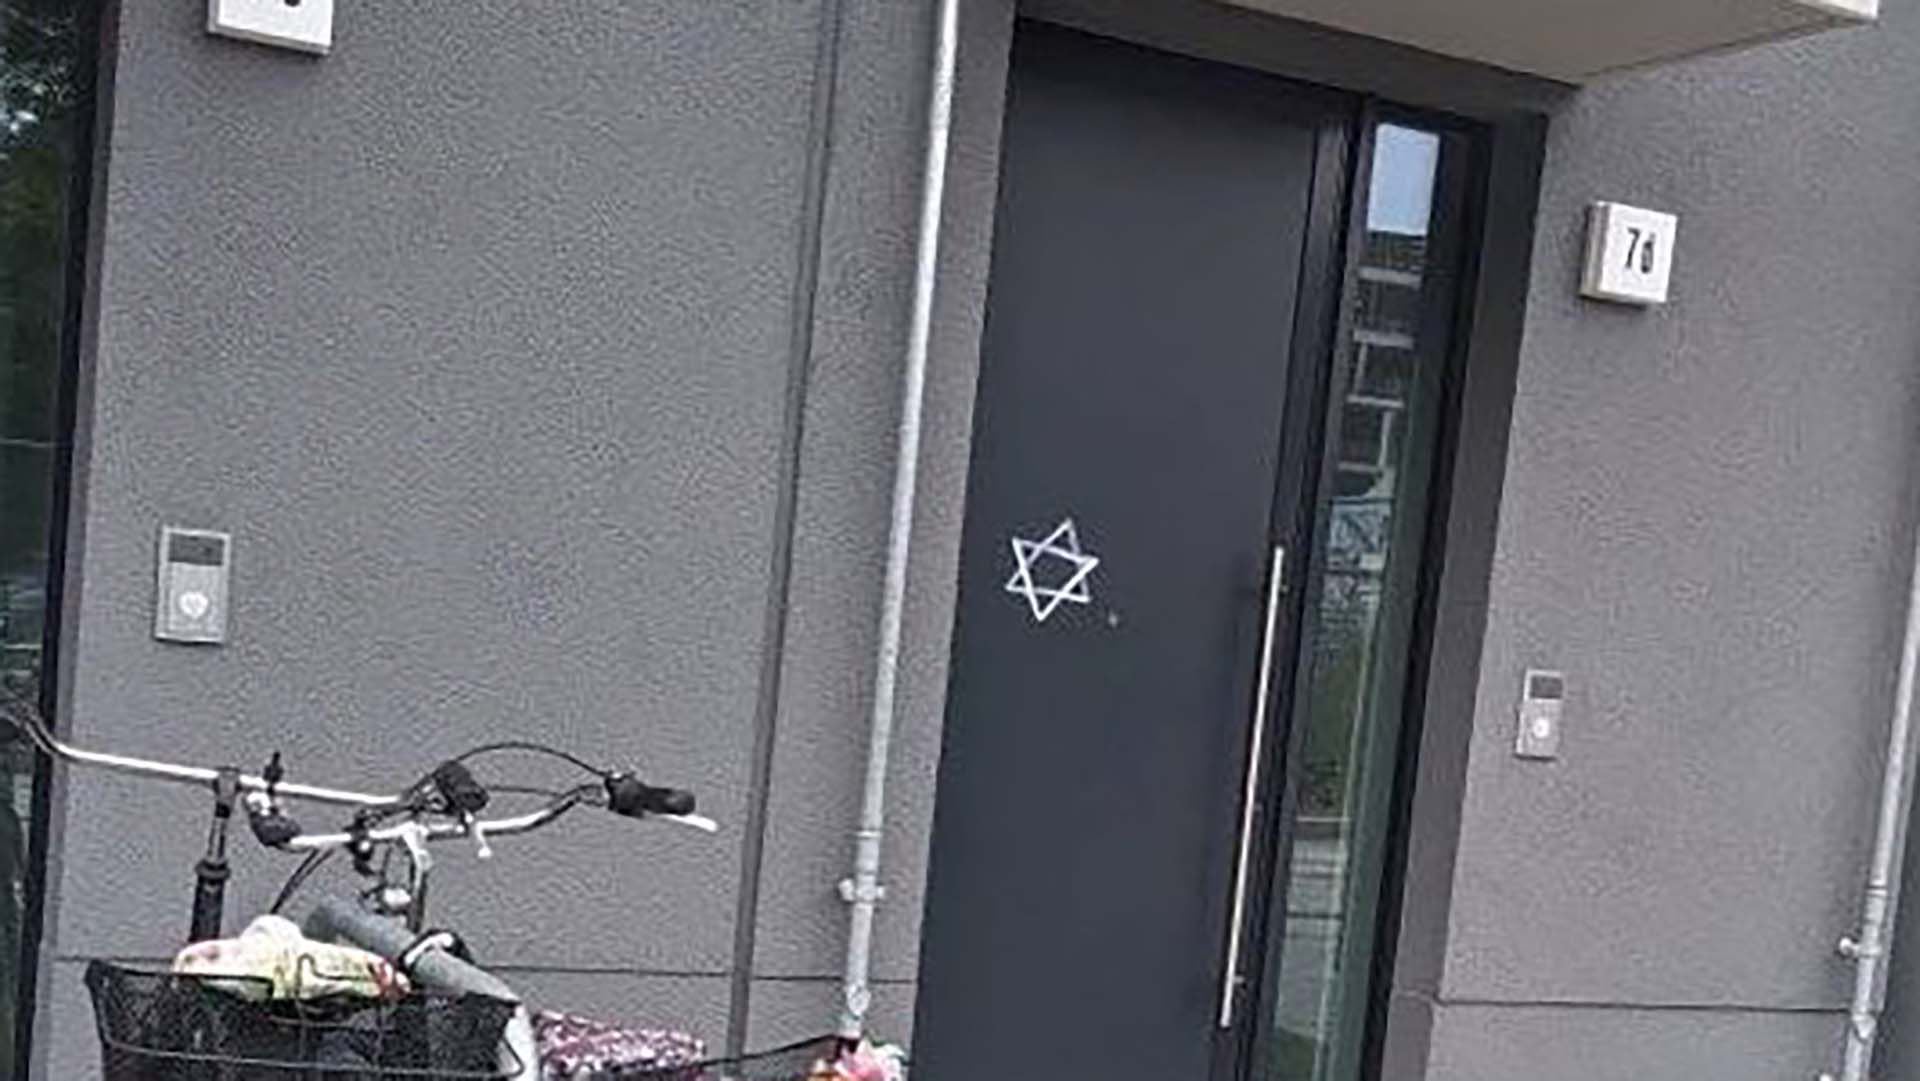 Estos actos de vandalismo recuerdan las persecuciones que los judíos sufrieron bajo el régimen nazi.